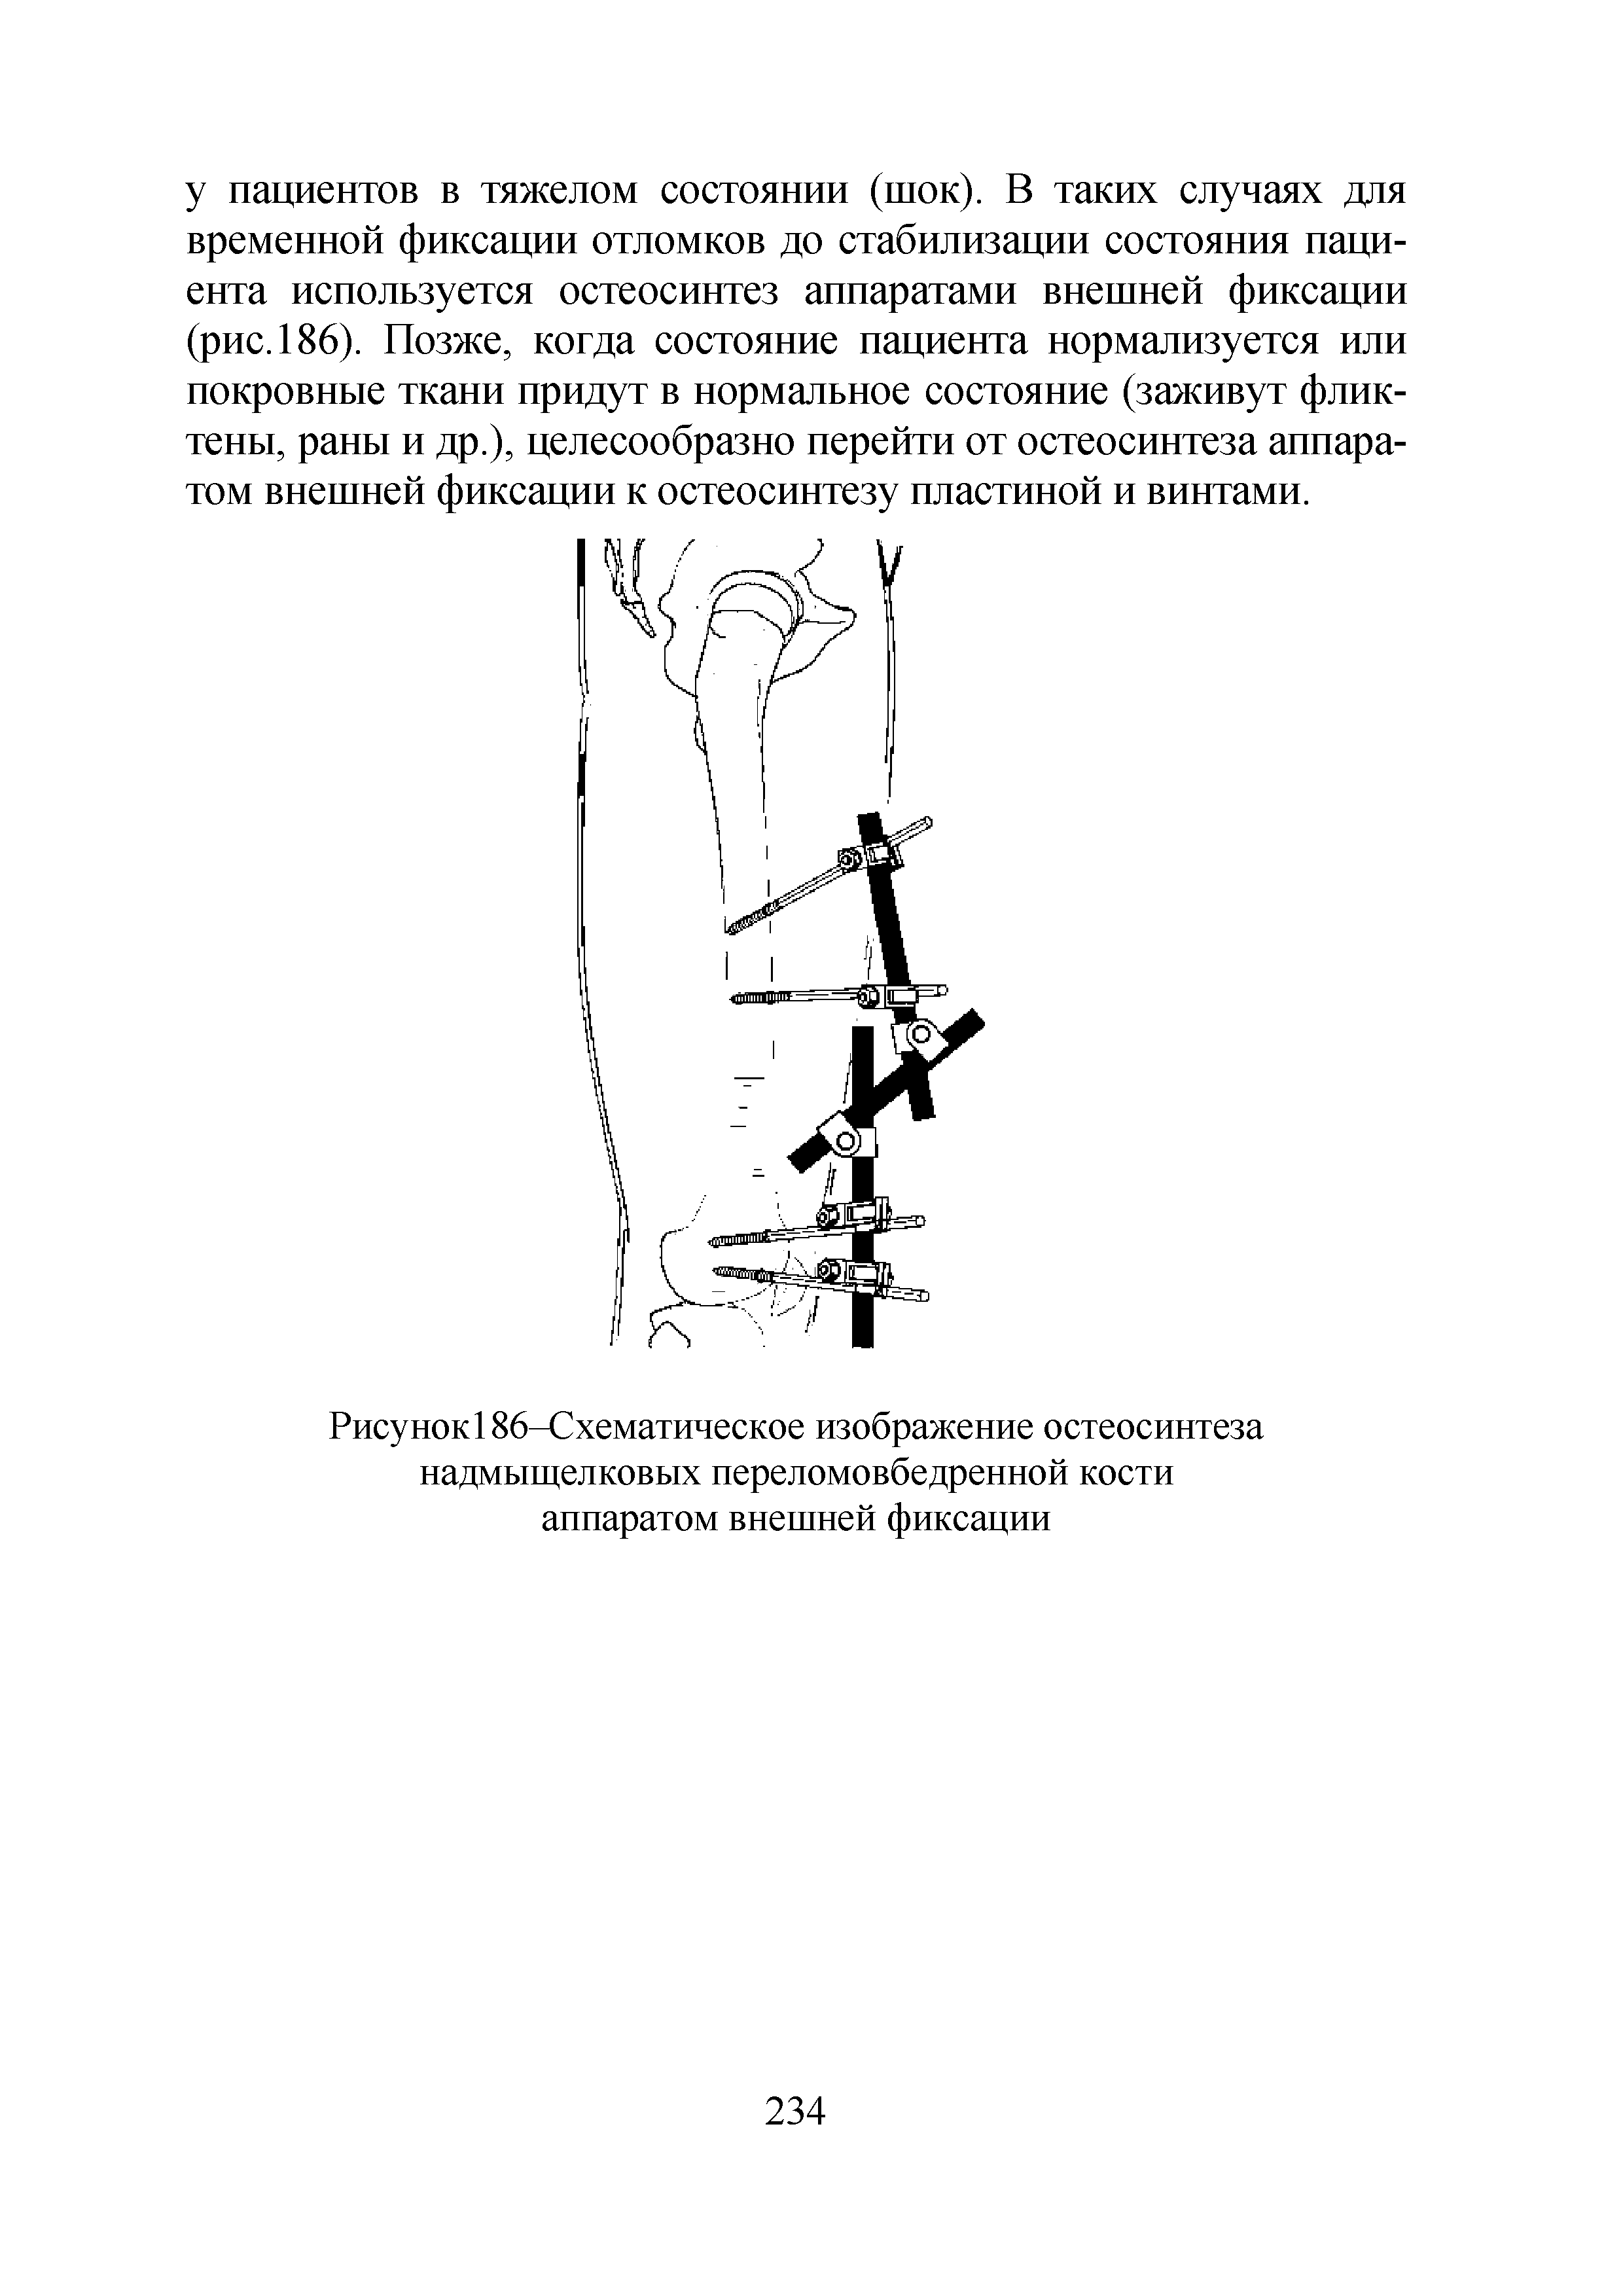 Рисунок186-Схематическое изображение остеосинтеза надмыщелковых переломовбедренной кости аппаратом внешней фиксации...